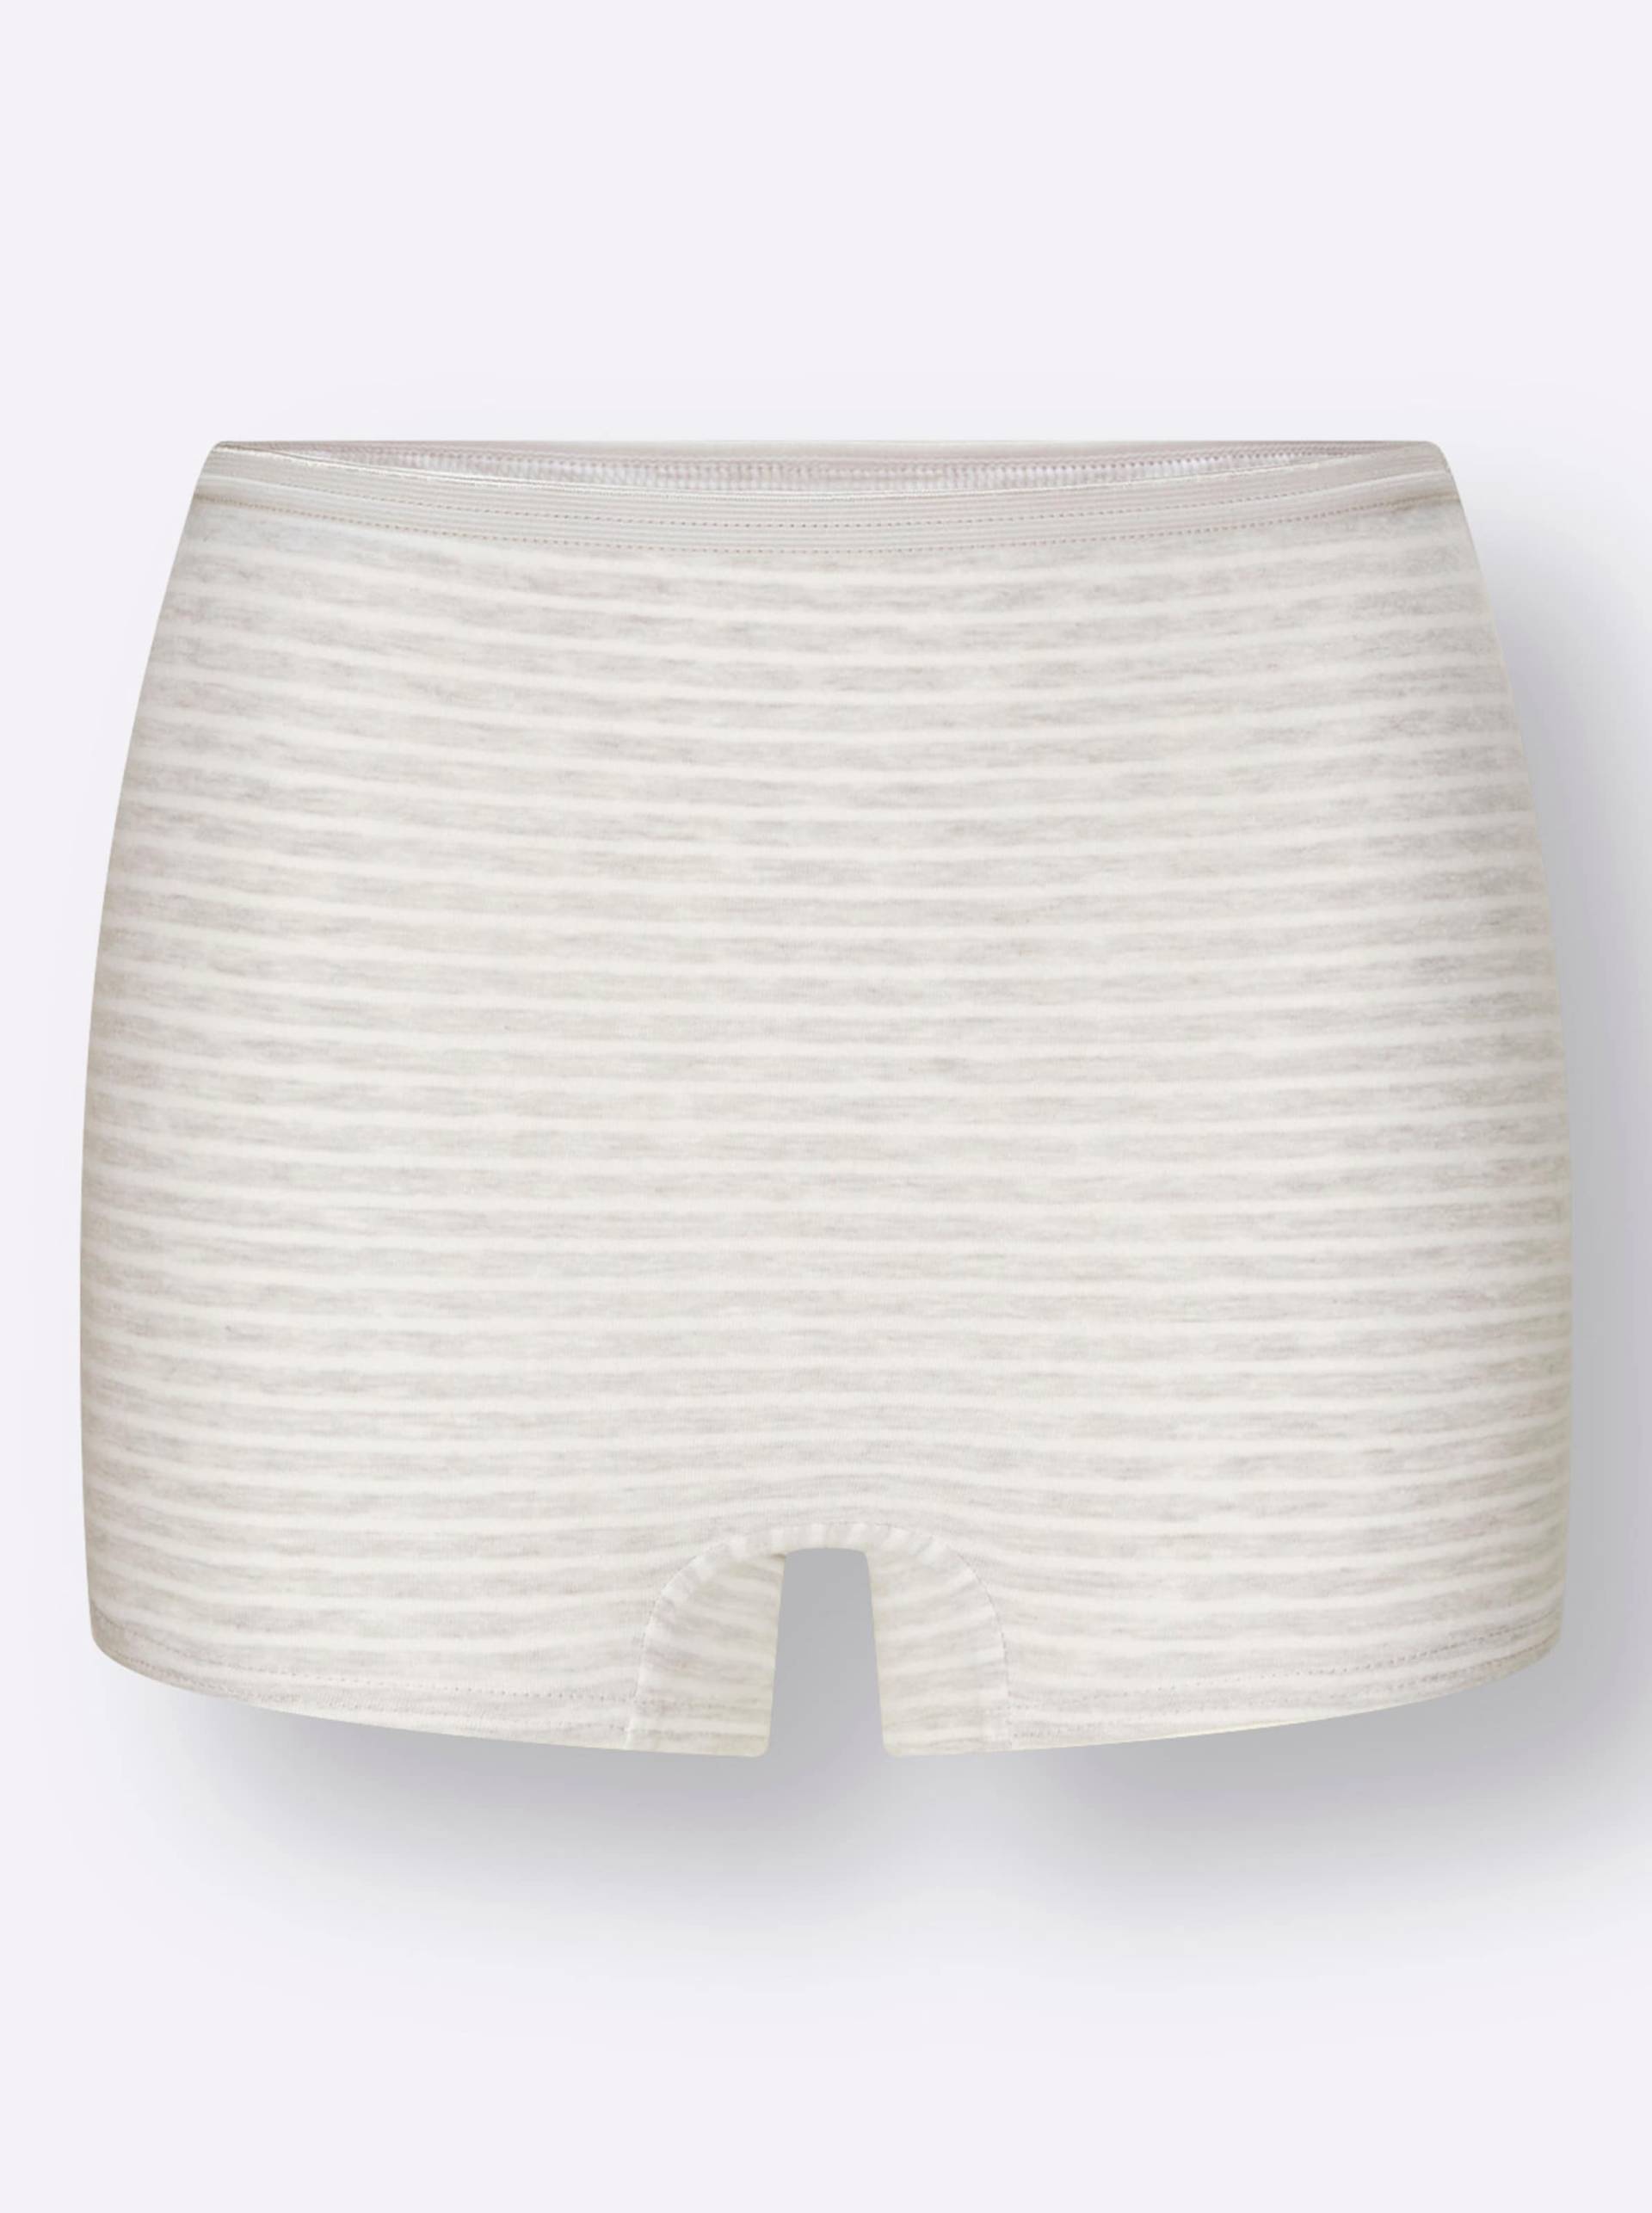 Panty in 2x hellgrau-geringelt + 2x weiß von wäschepur von wäschepur